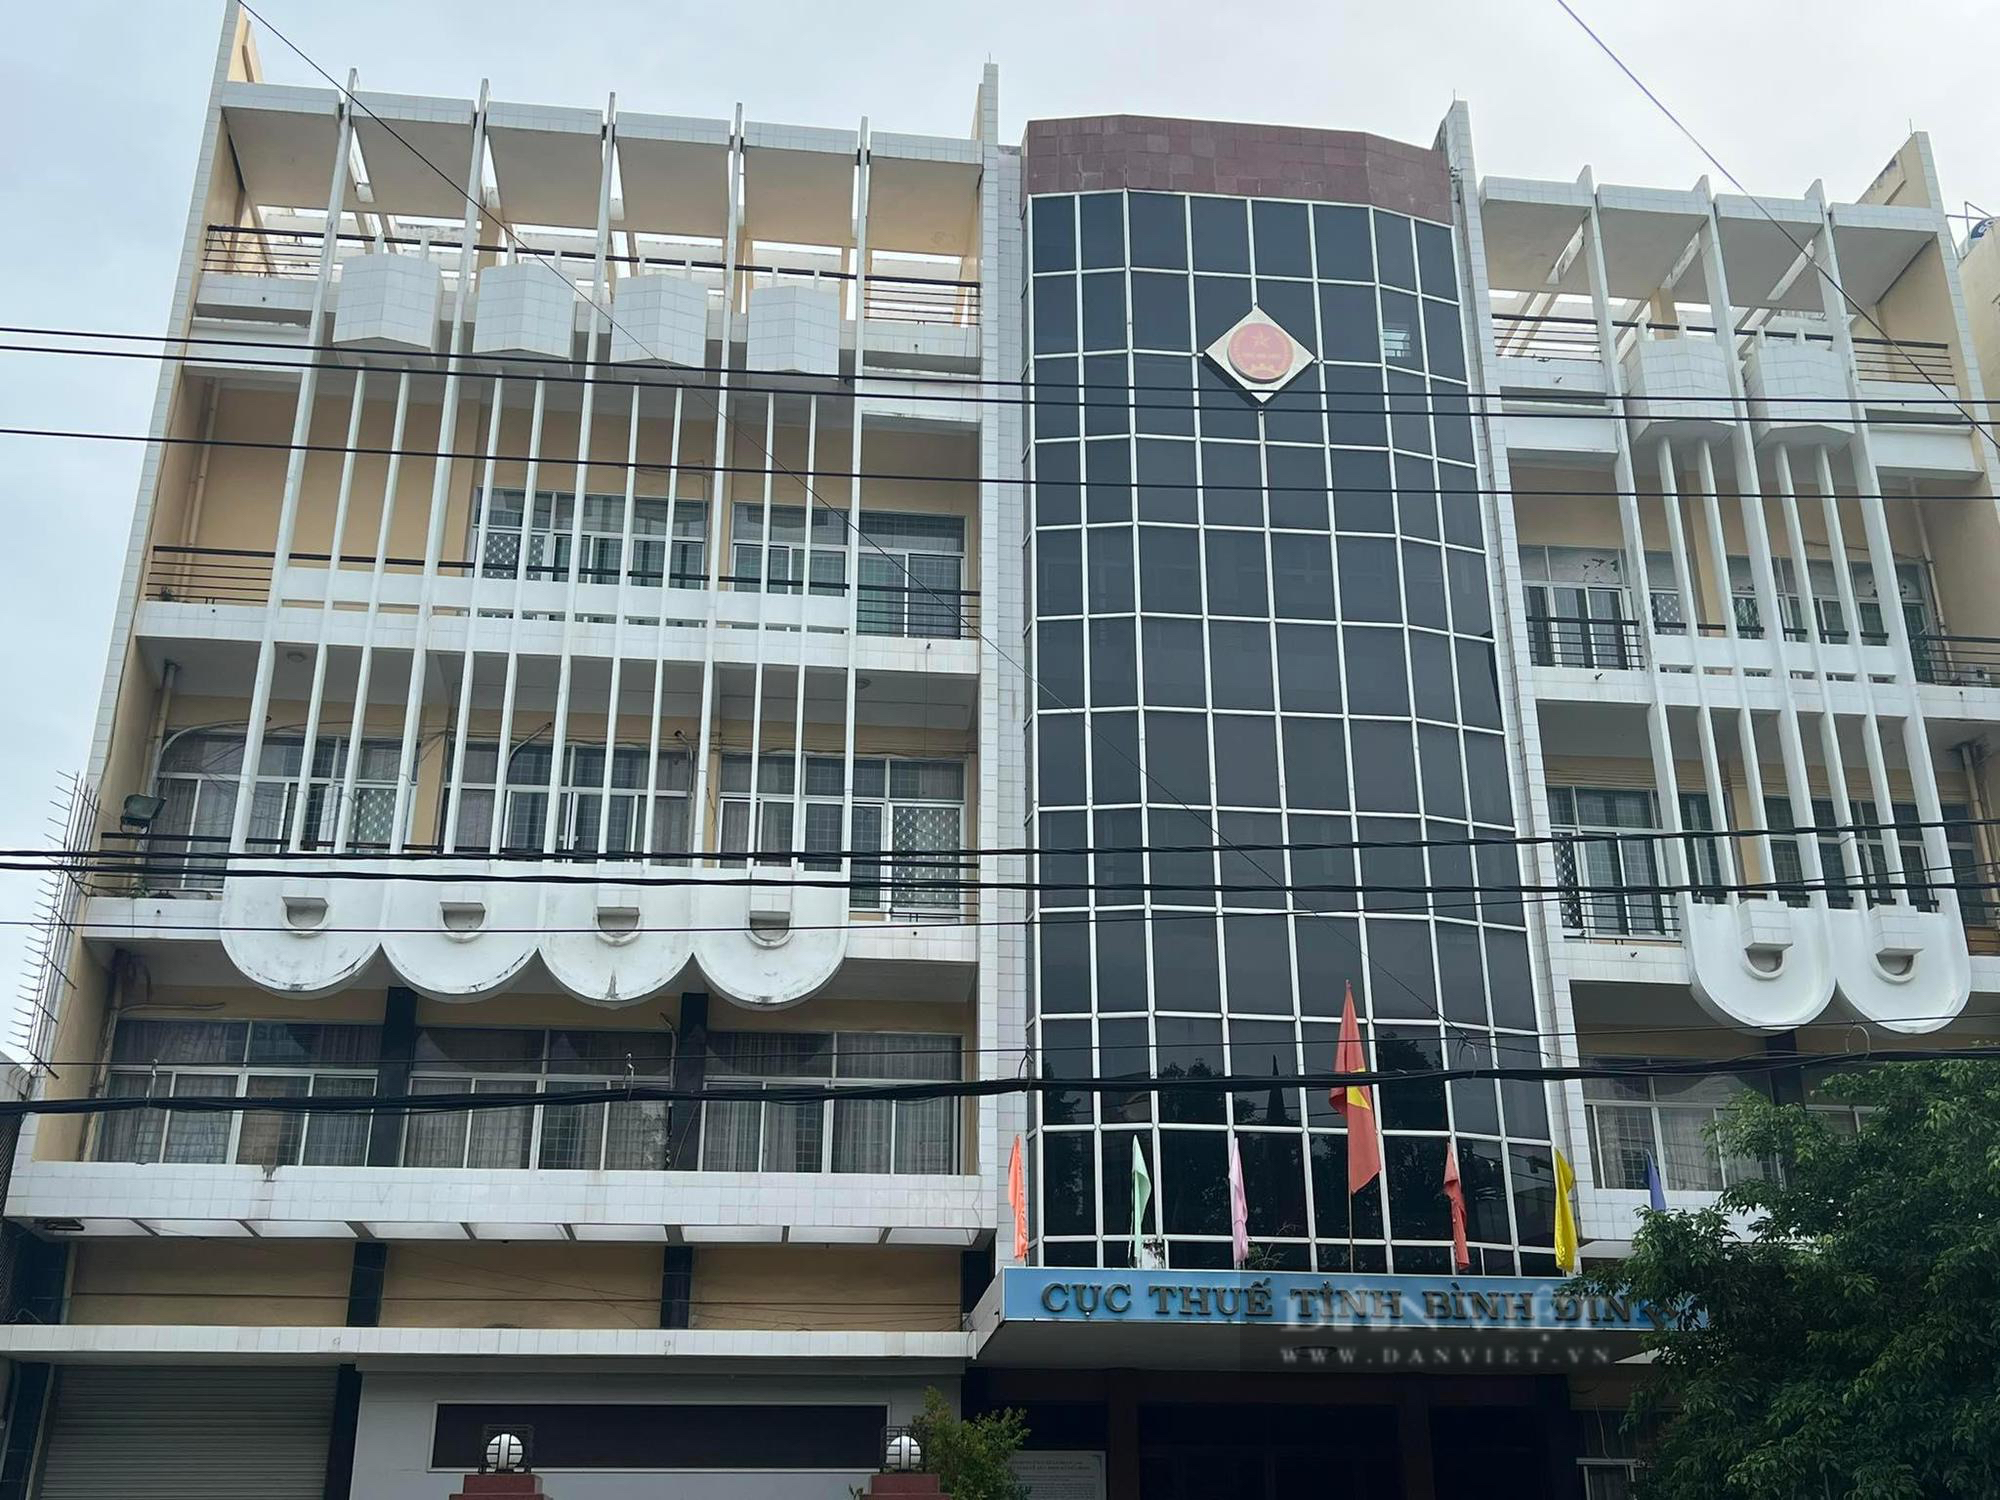 Cận cảnh trụ sở cũ Cục Thuế Bình Định trên khu 'đất vàng' bỏ hoang giữa trung tâm Quy Nhơn - Ảnh 10.